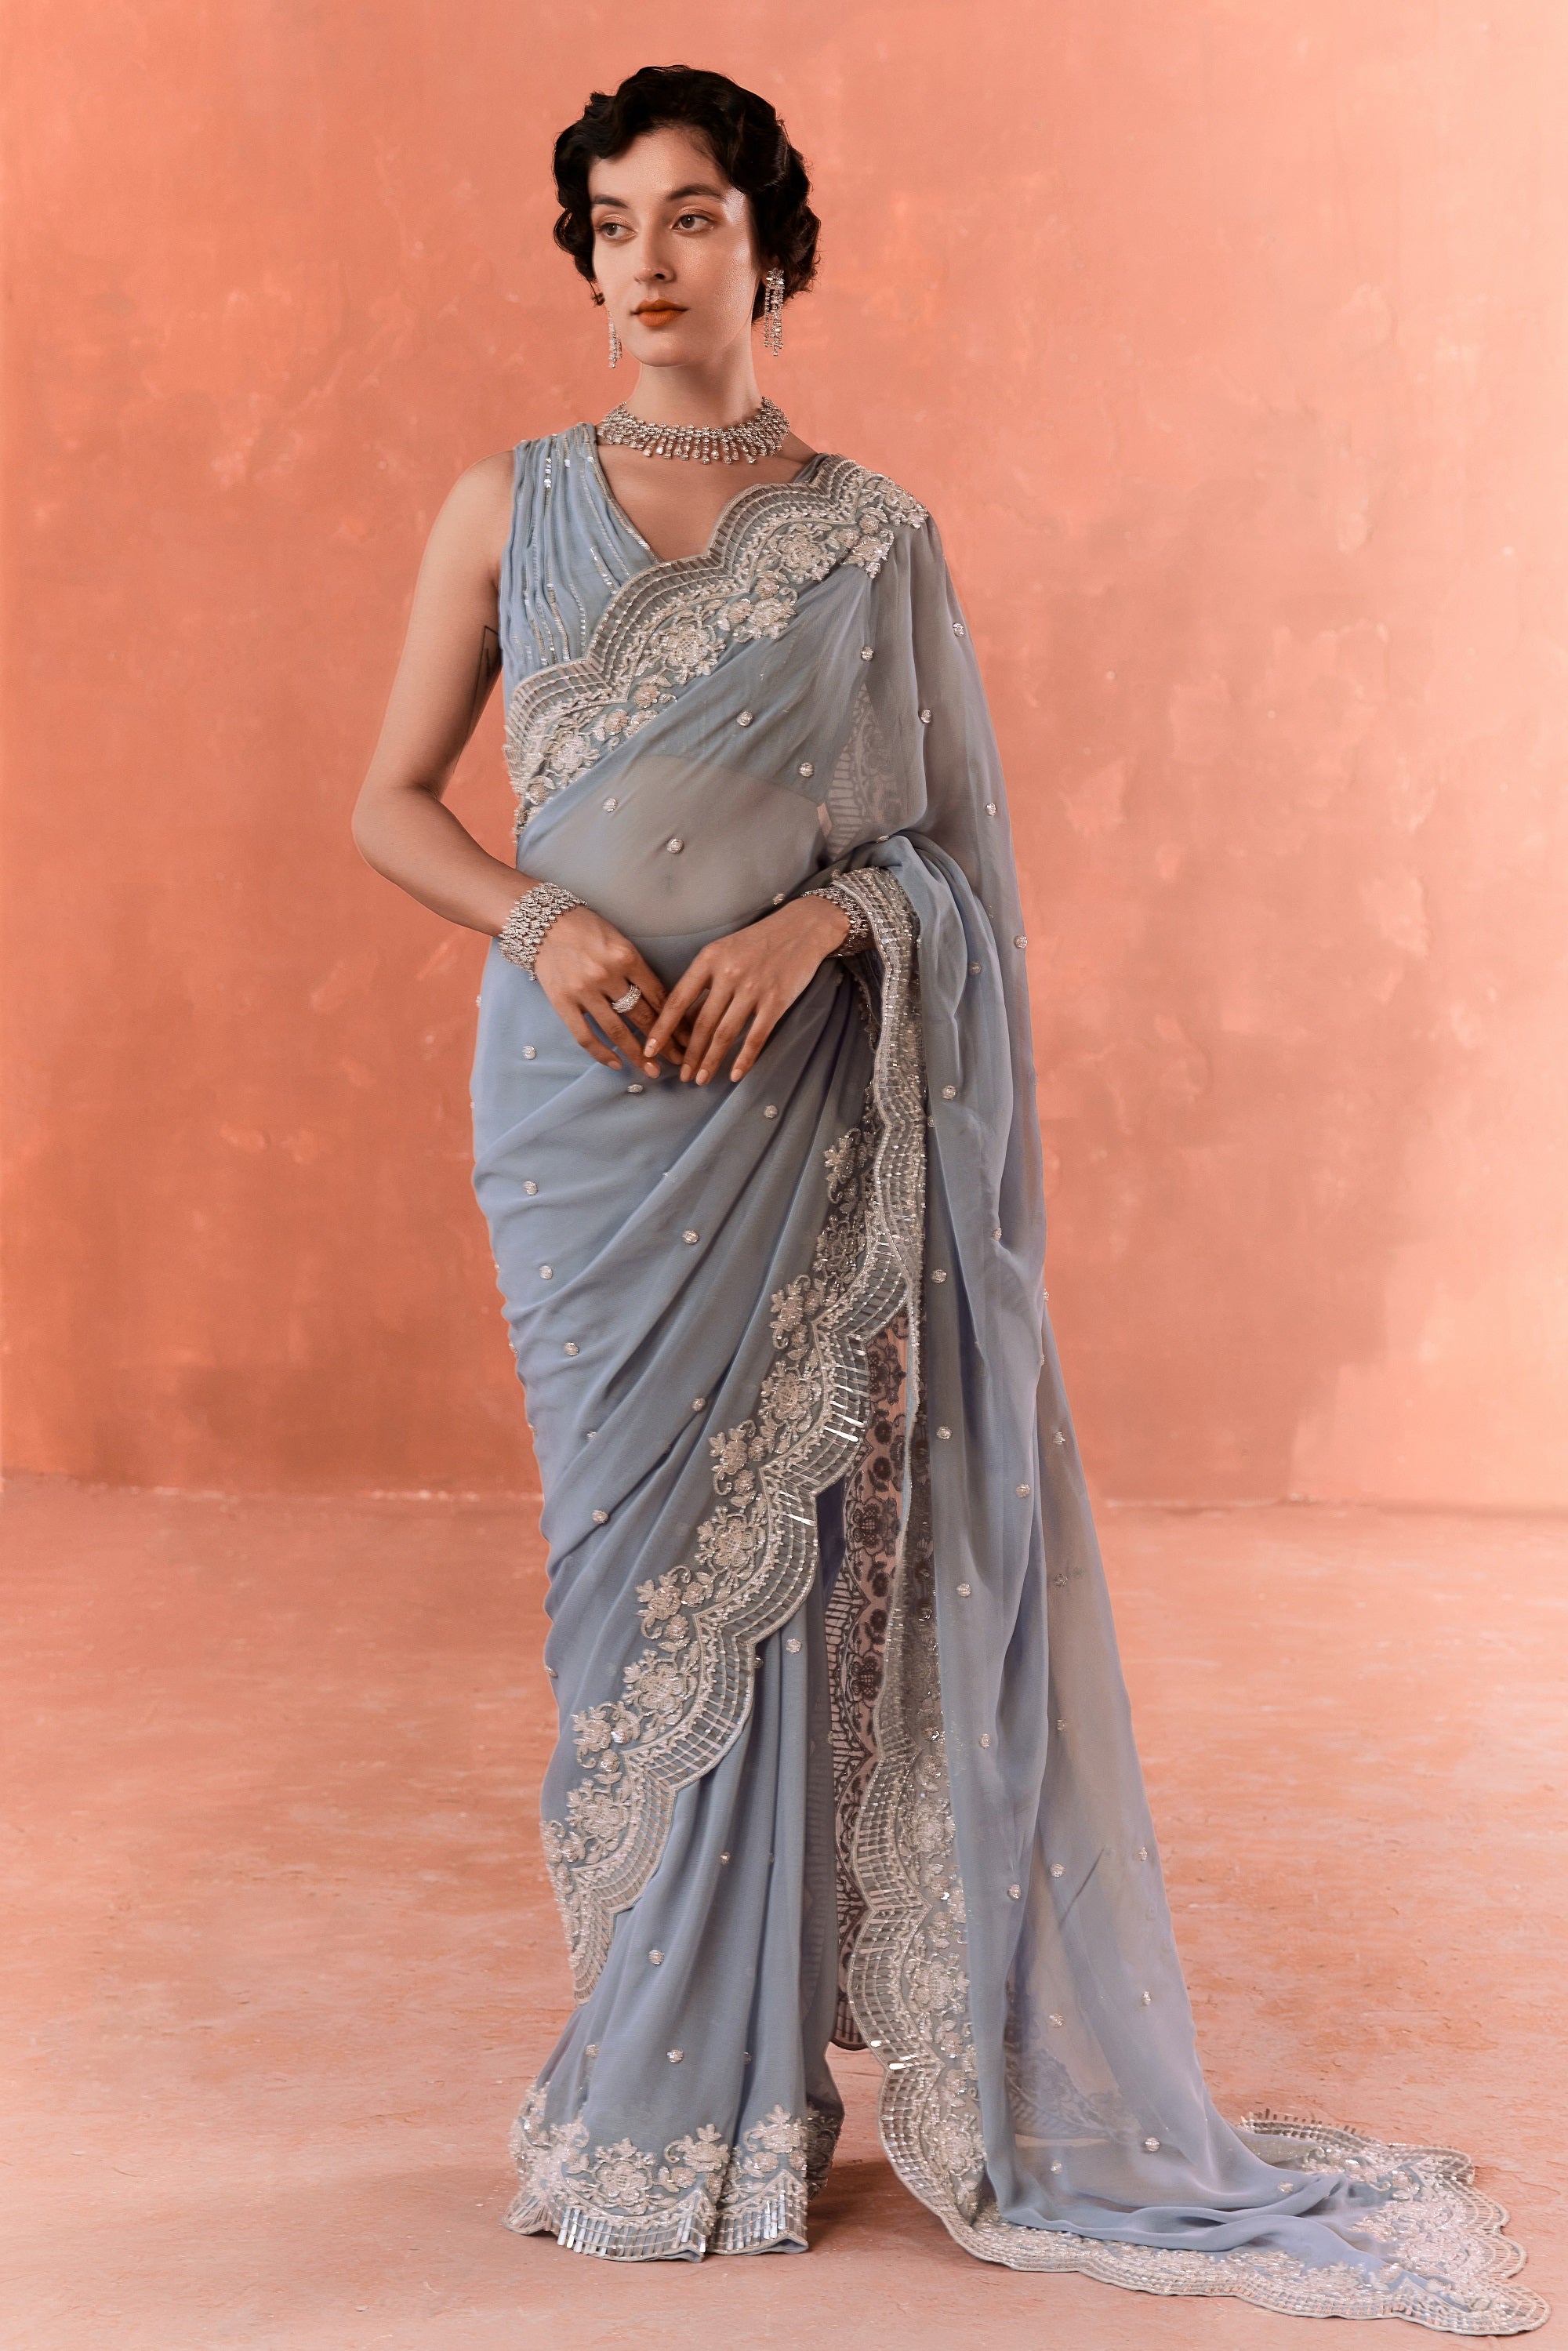 Nalli Saree Online India - Designer Sarees Rs 500 to 1000 - SareesWala.com